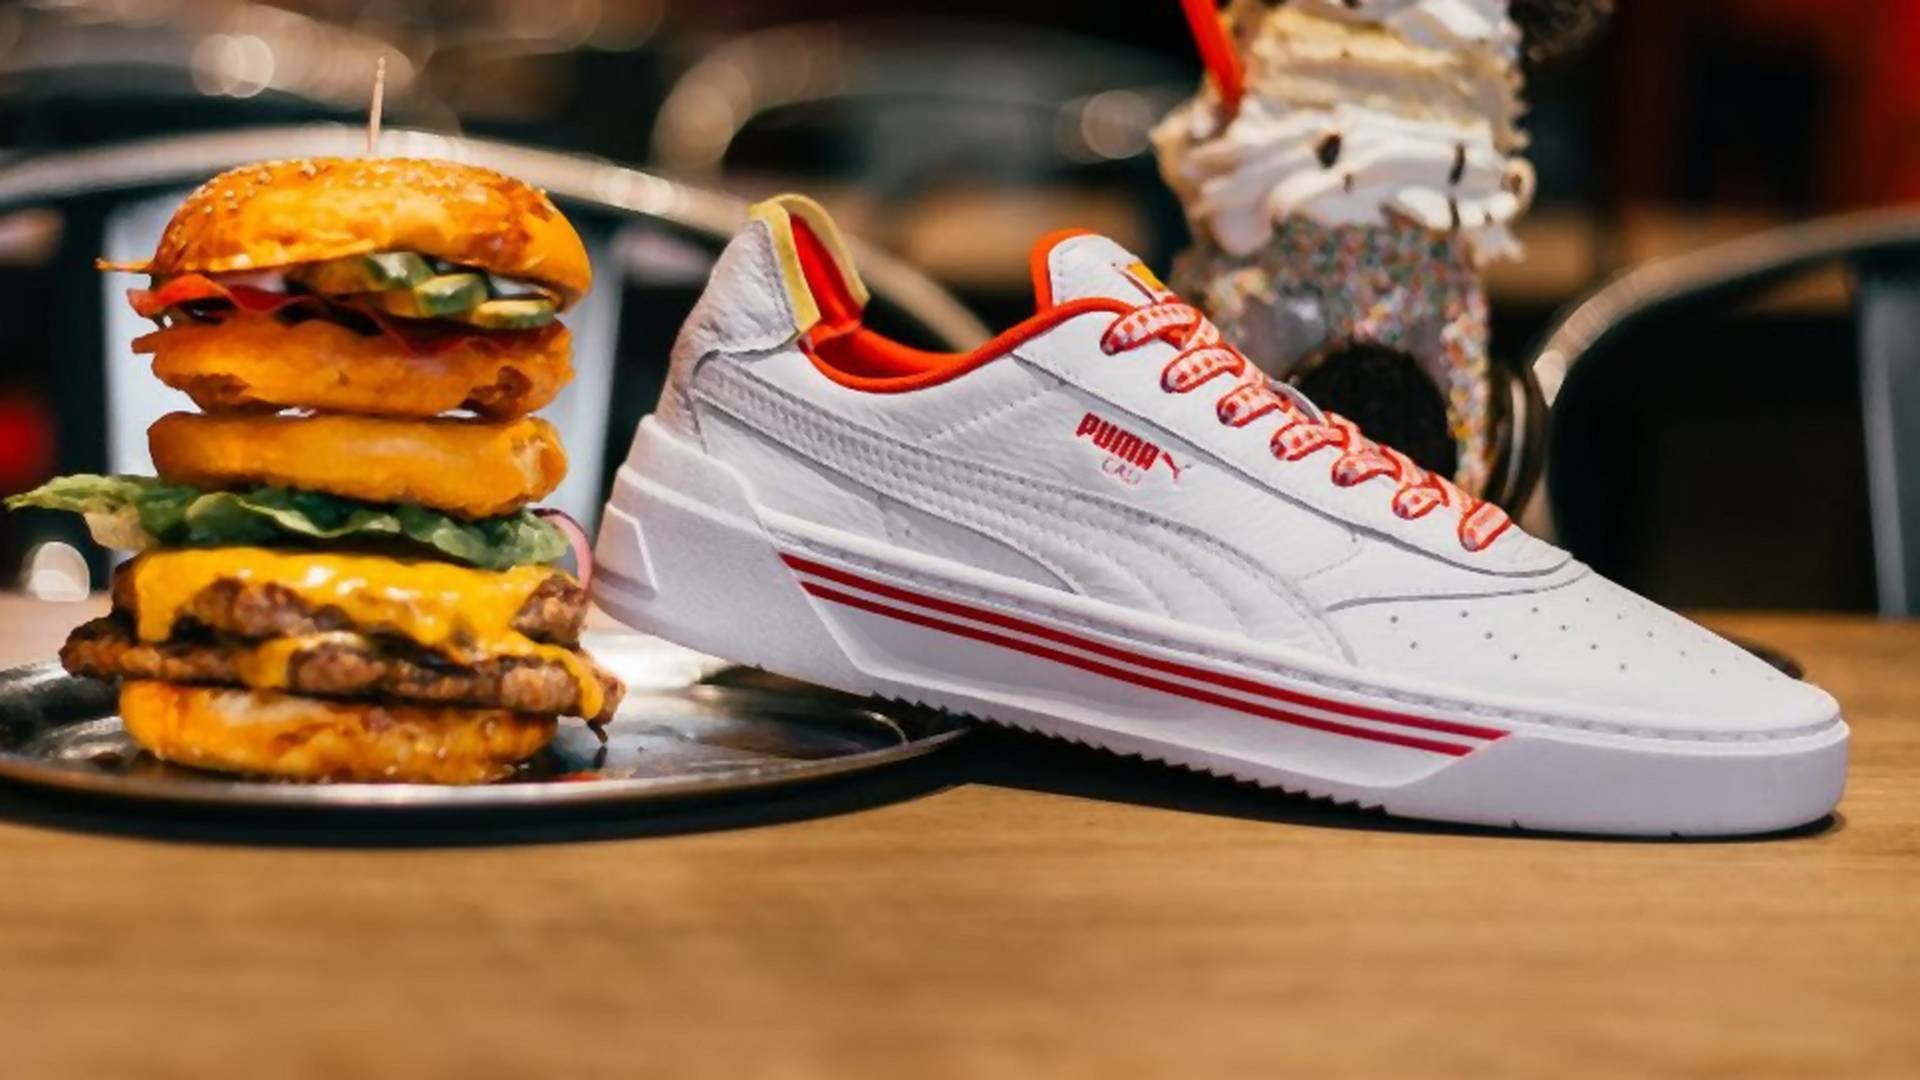 Sneakersy PUMY inspirowane fast foodem, to wbrew pozorom idealne buty na wakacje